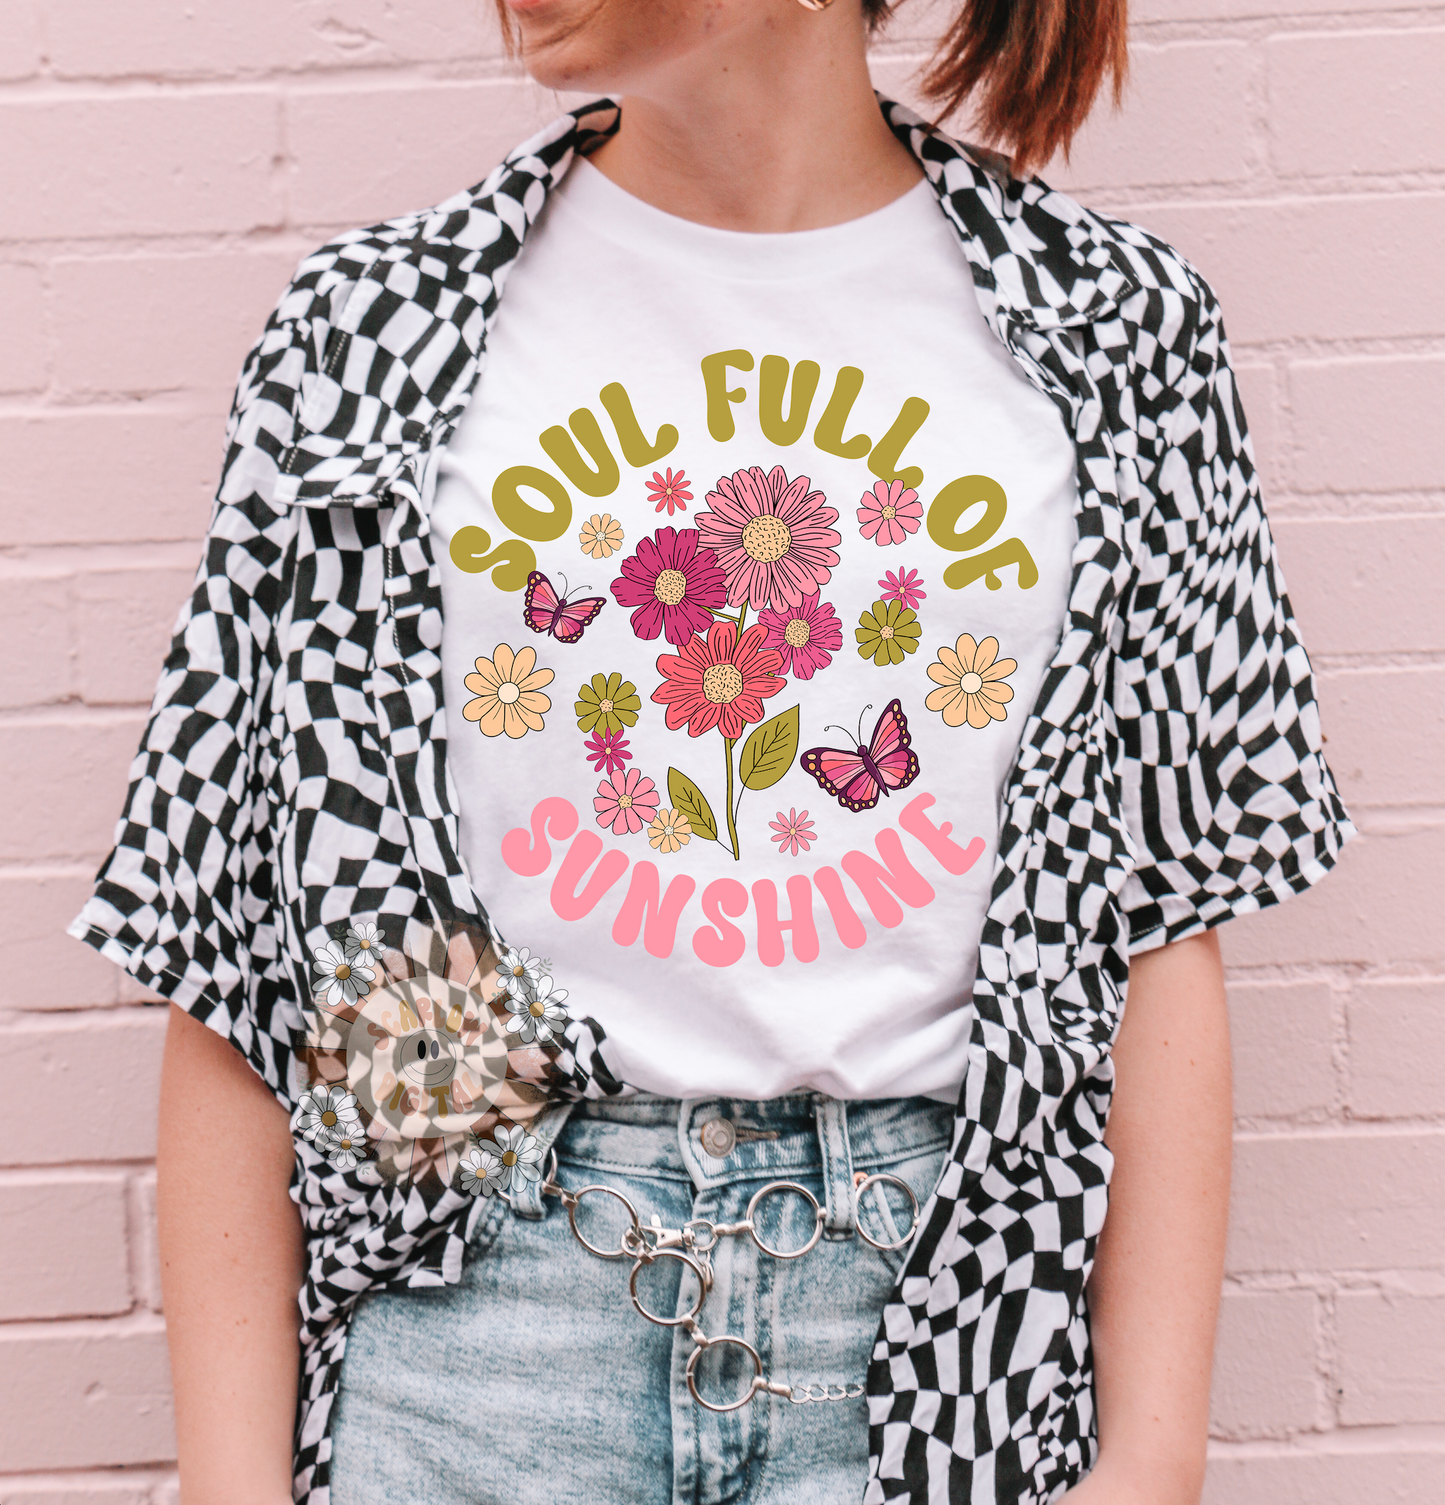 Soul Full of Sunshine PNG-Floral Sublimation Digital Design Download-flowers png, spring png, summer png, self love png, inspirational png